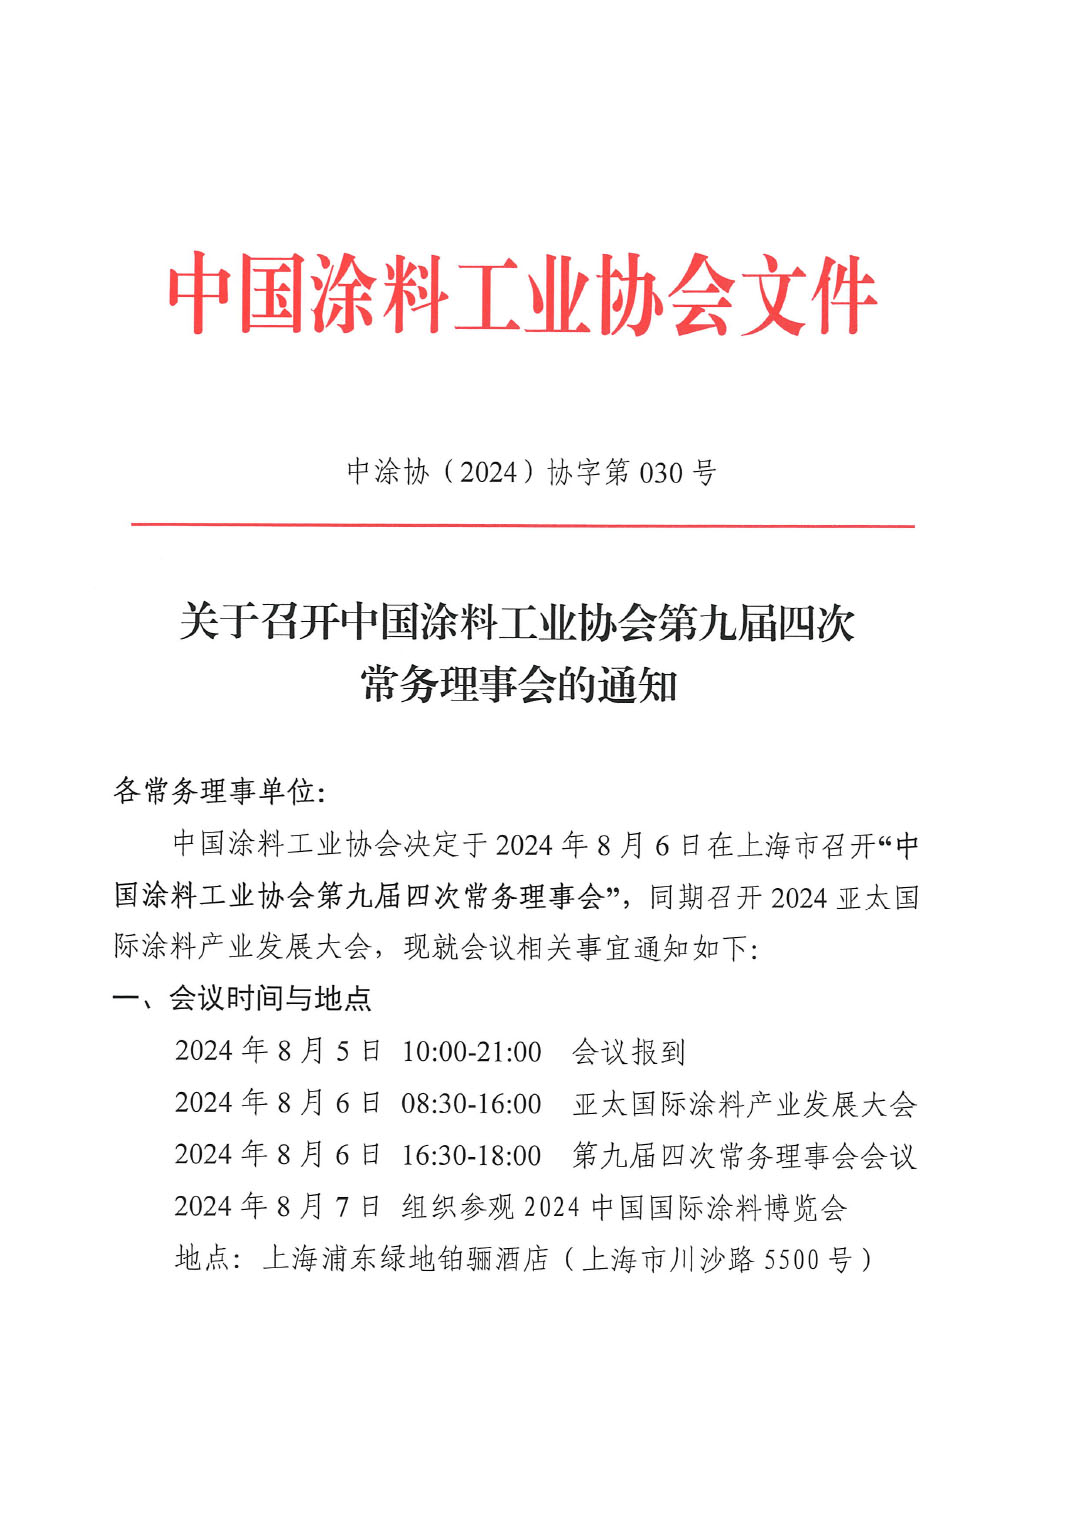 关于召开中国涂料工业协会第九届四次常务理事会的通知-1